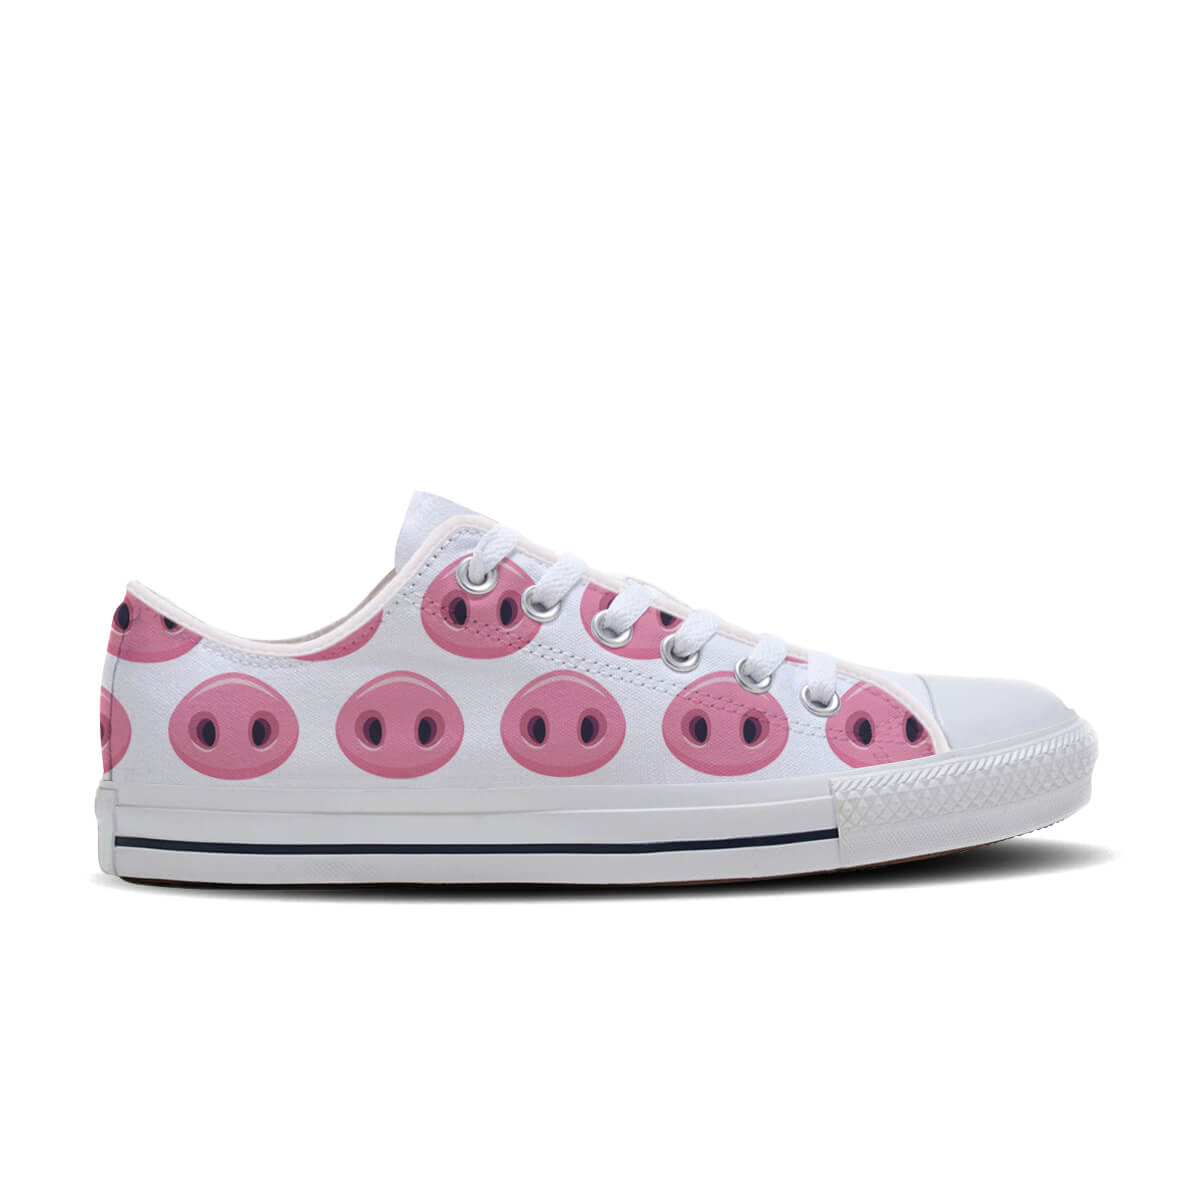 A Pig's Snout Shoes